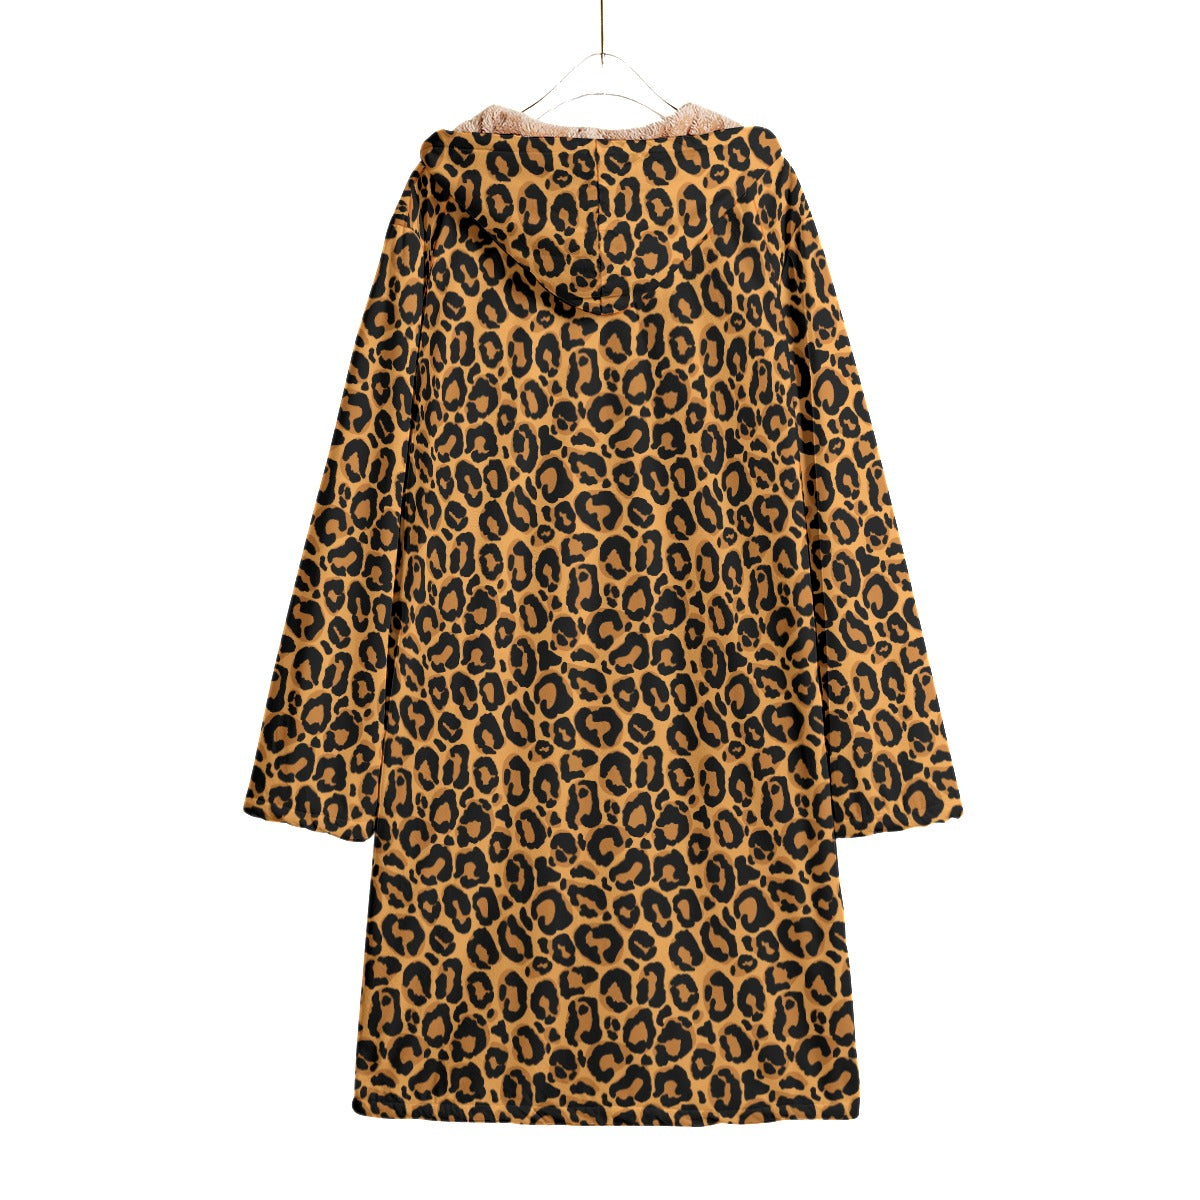 Leopard Print Fleece Lined Horn Button Coat